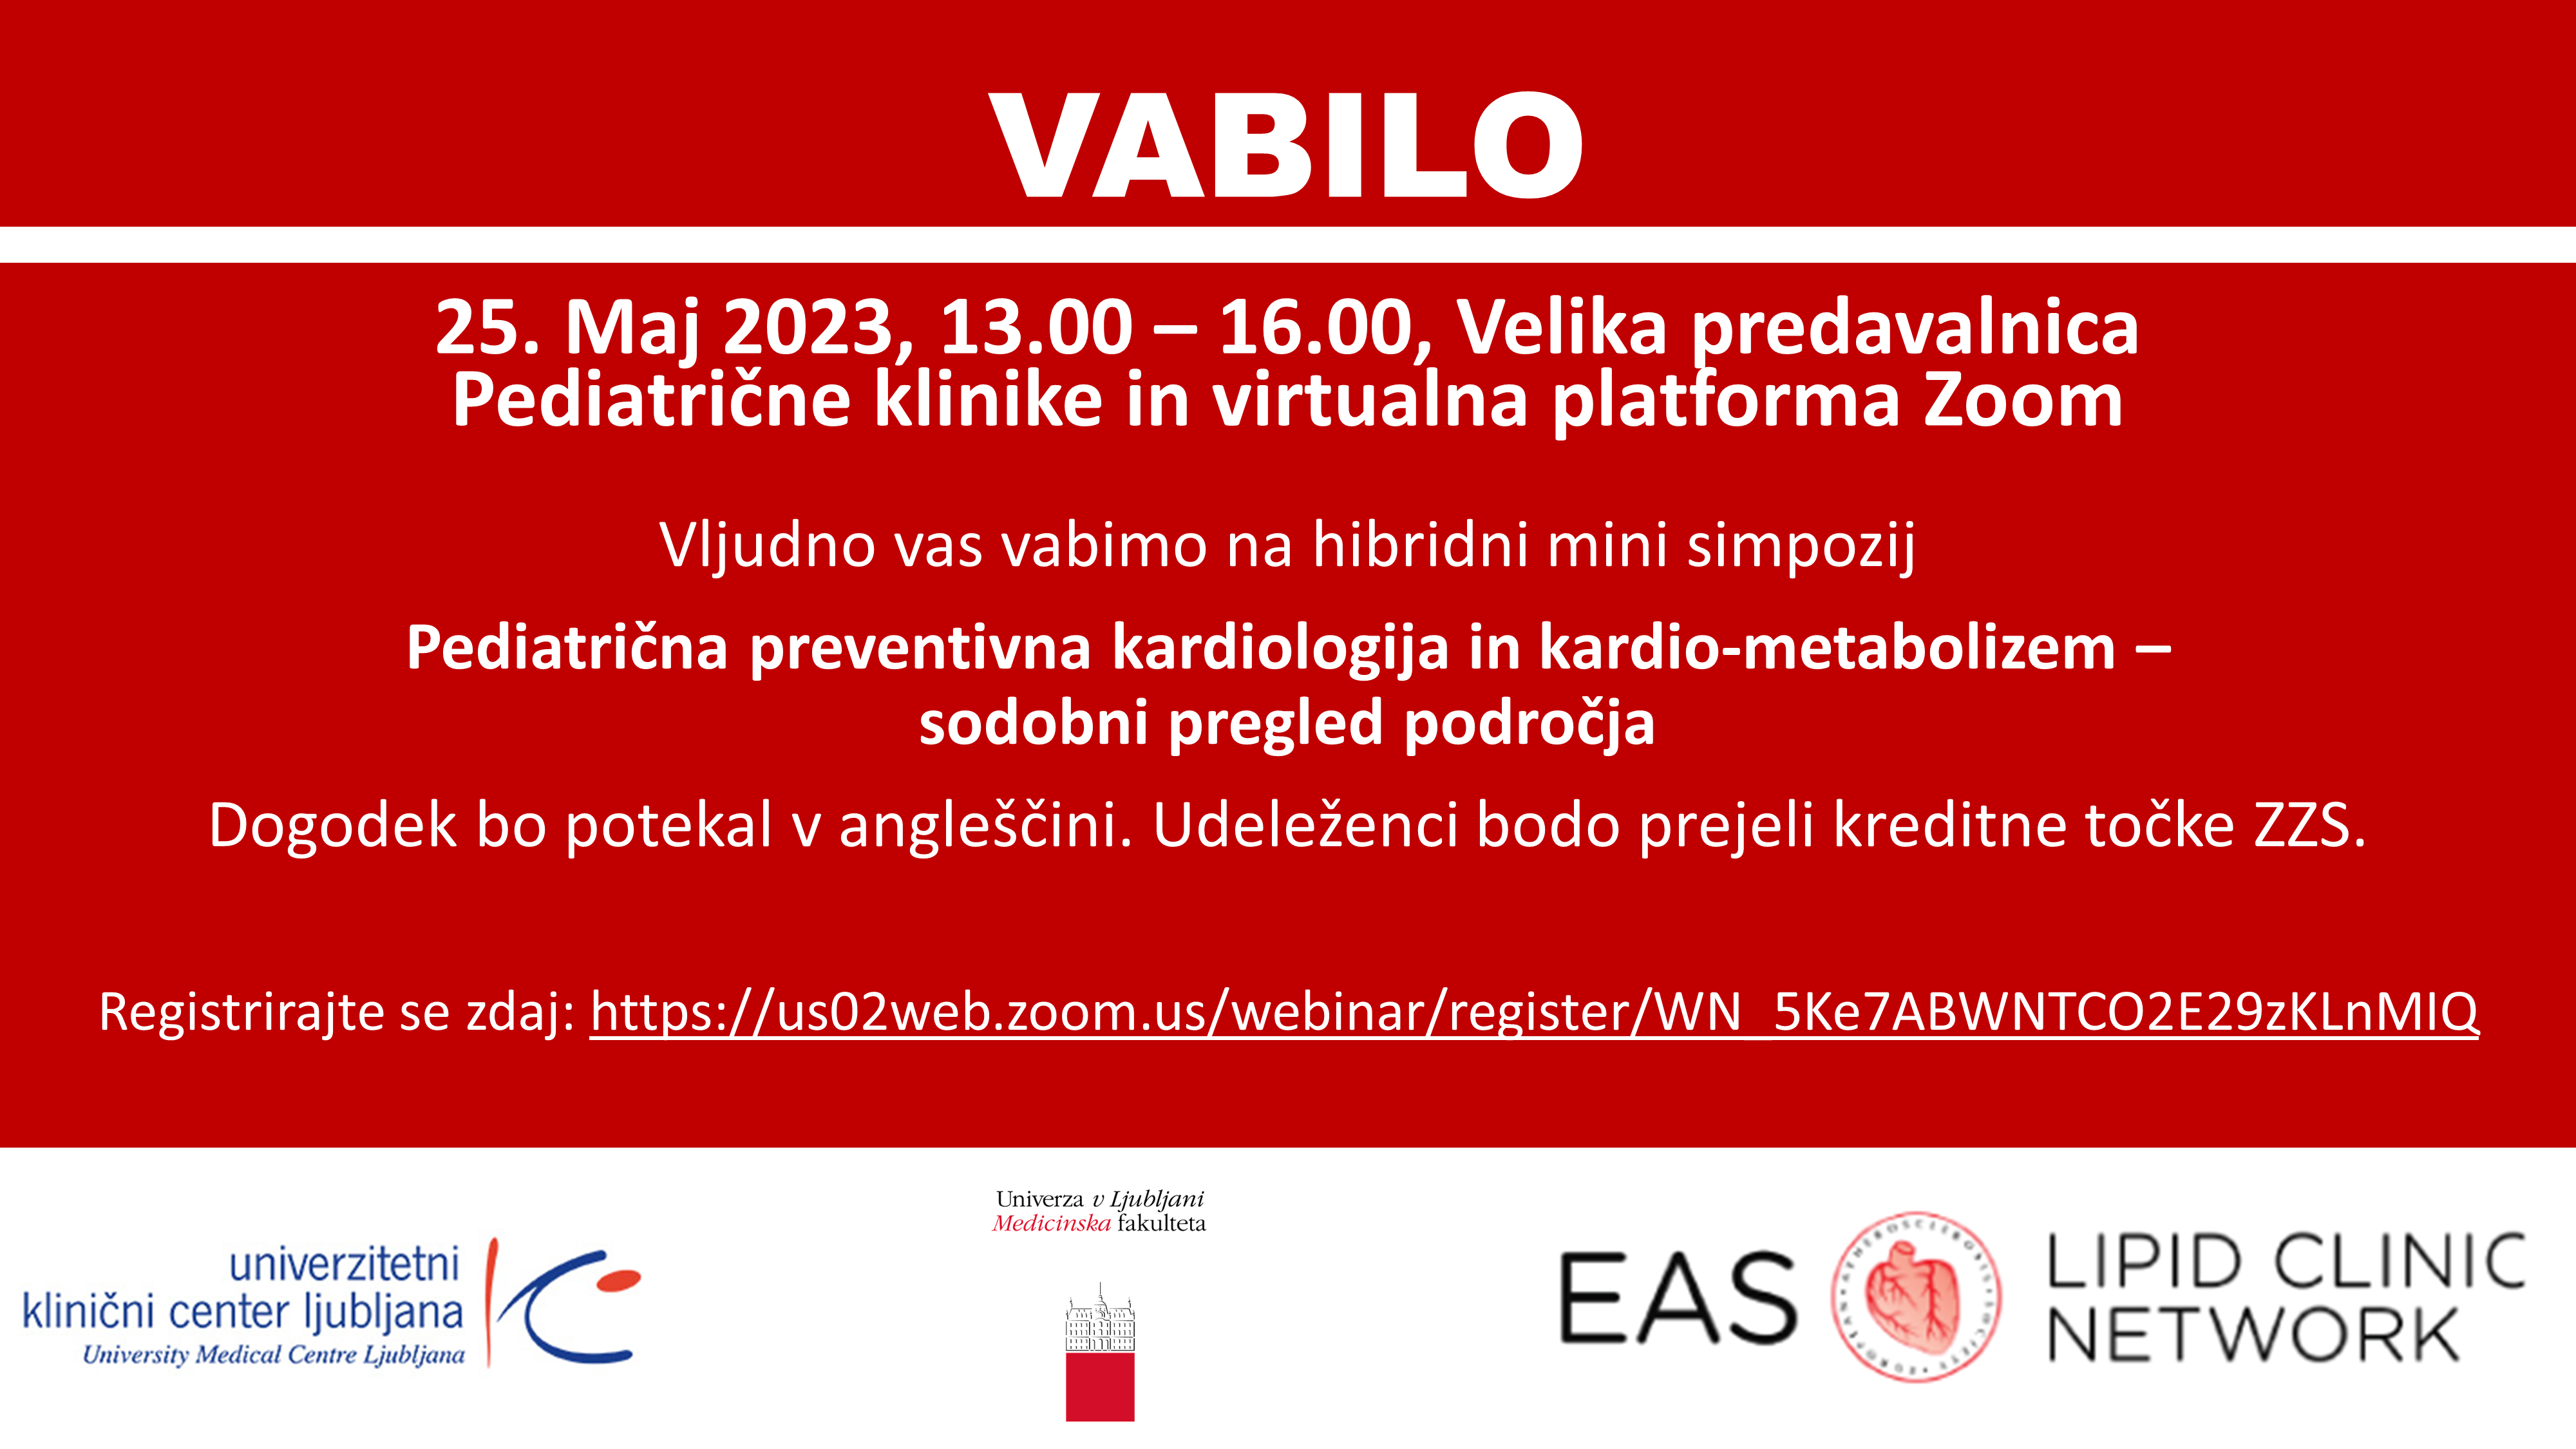 Vabilo - mini simpozij - Pediatrična preventivna kardiologija in kardio-metabolizem.png